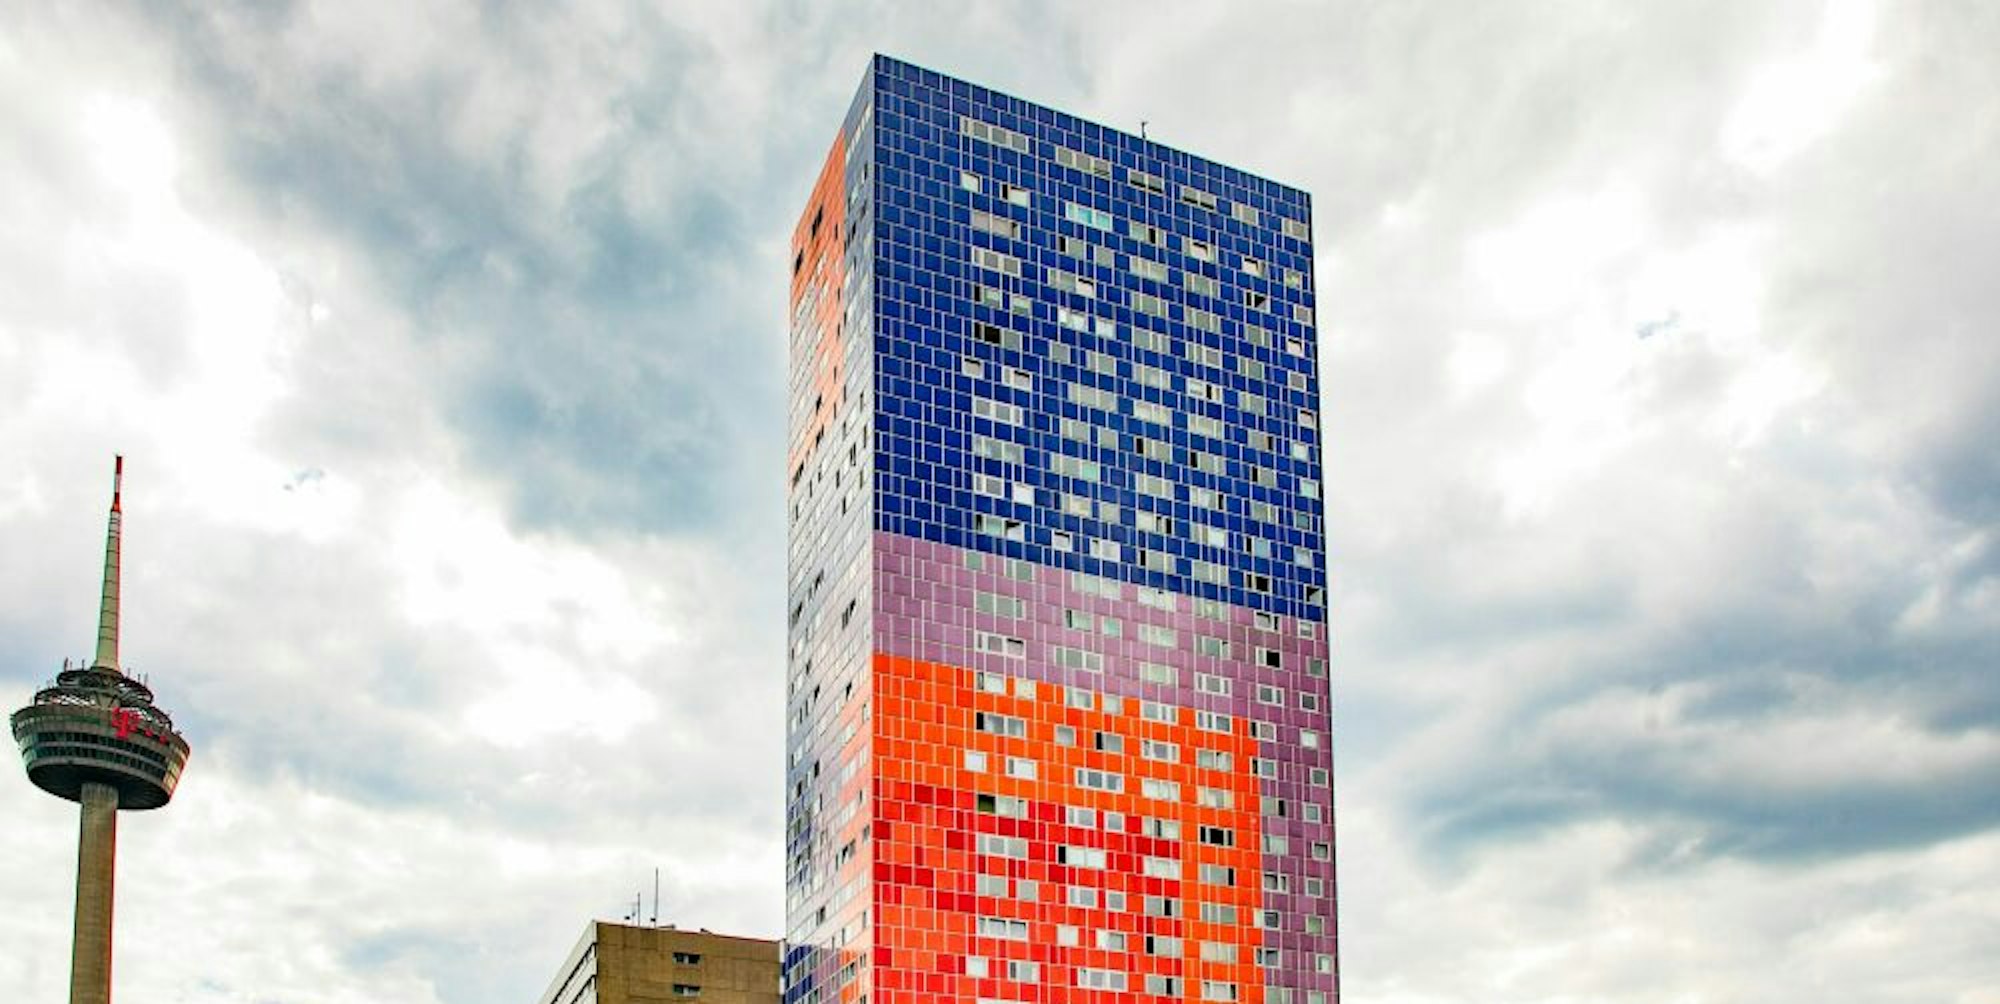 Hingucker: Das Gebäude bekam aufgrund der Farbwahl den Zusatz „Papageienhaus“.